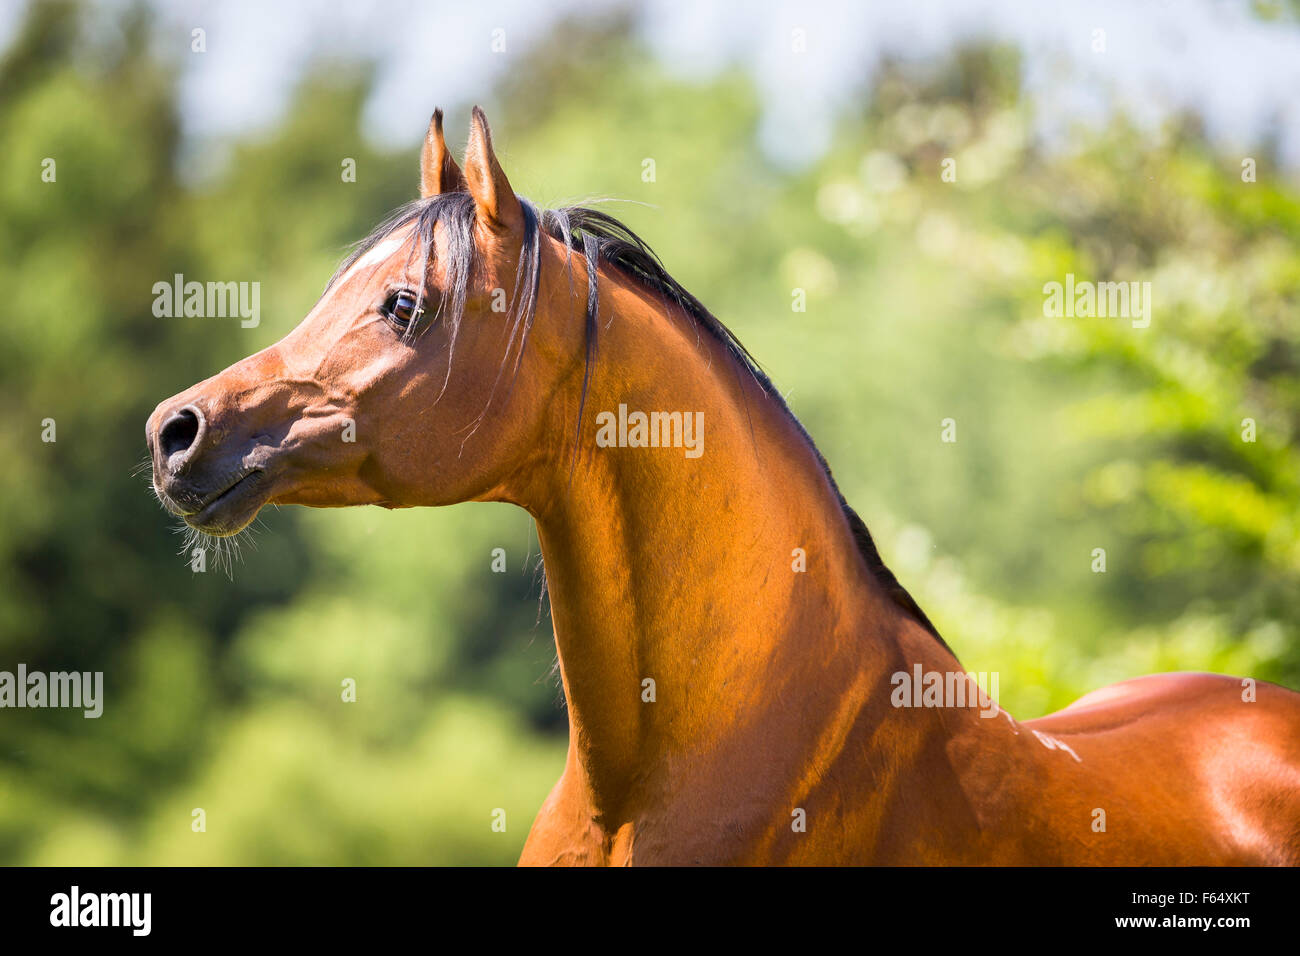 Arabische Pferd, Arabisches Pferd. Porträt der Bucht Hengst. Schweiz  Stockfotografie - Alamy